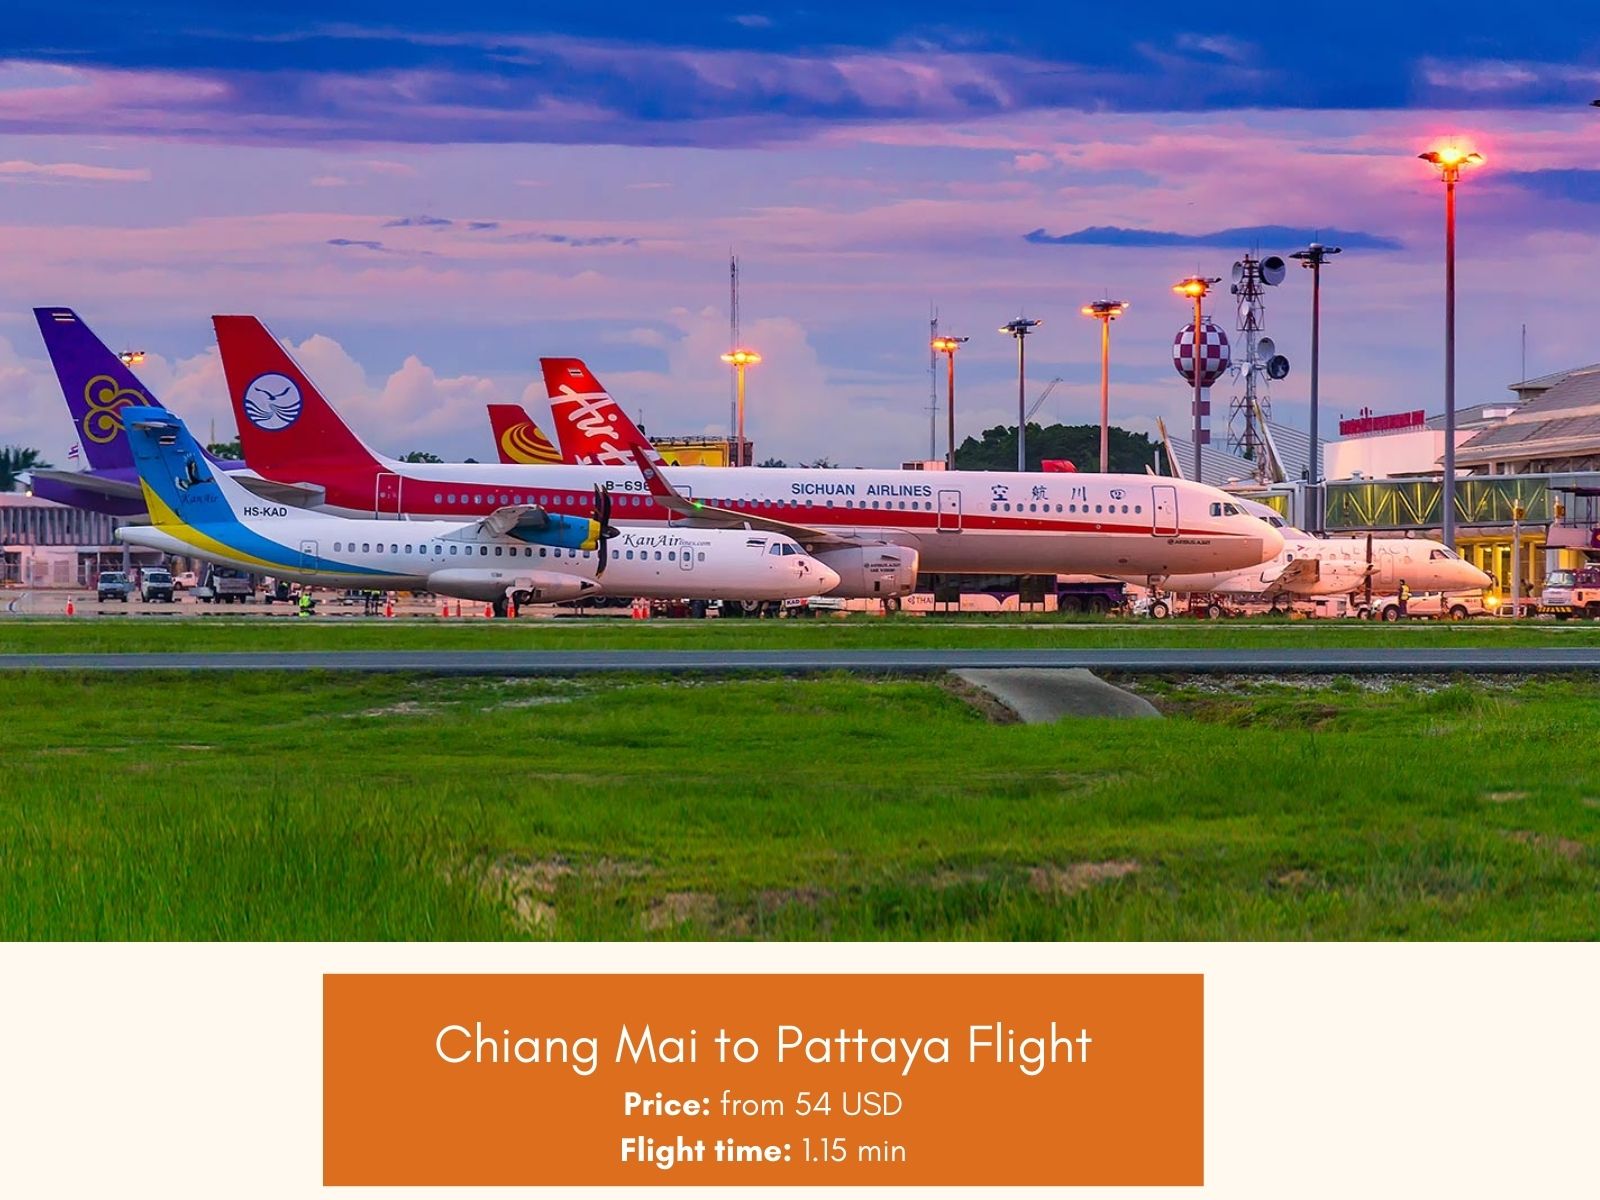 Chiang Mai to Pattaya Flight